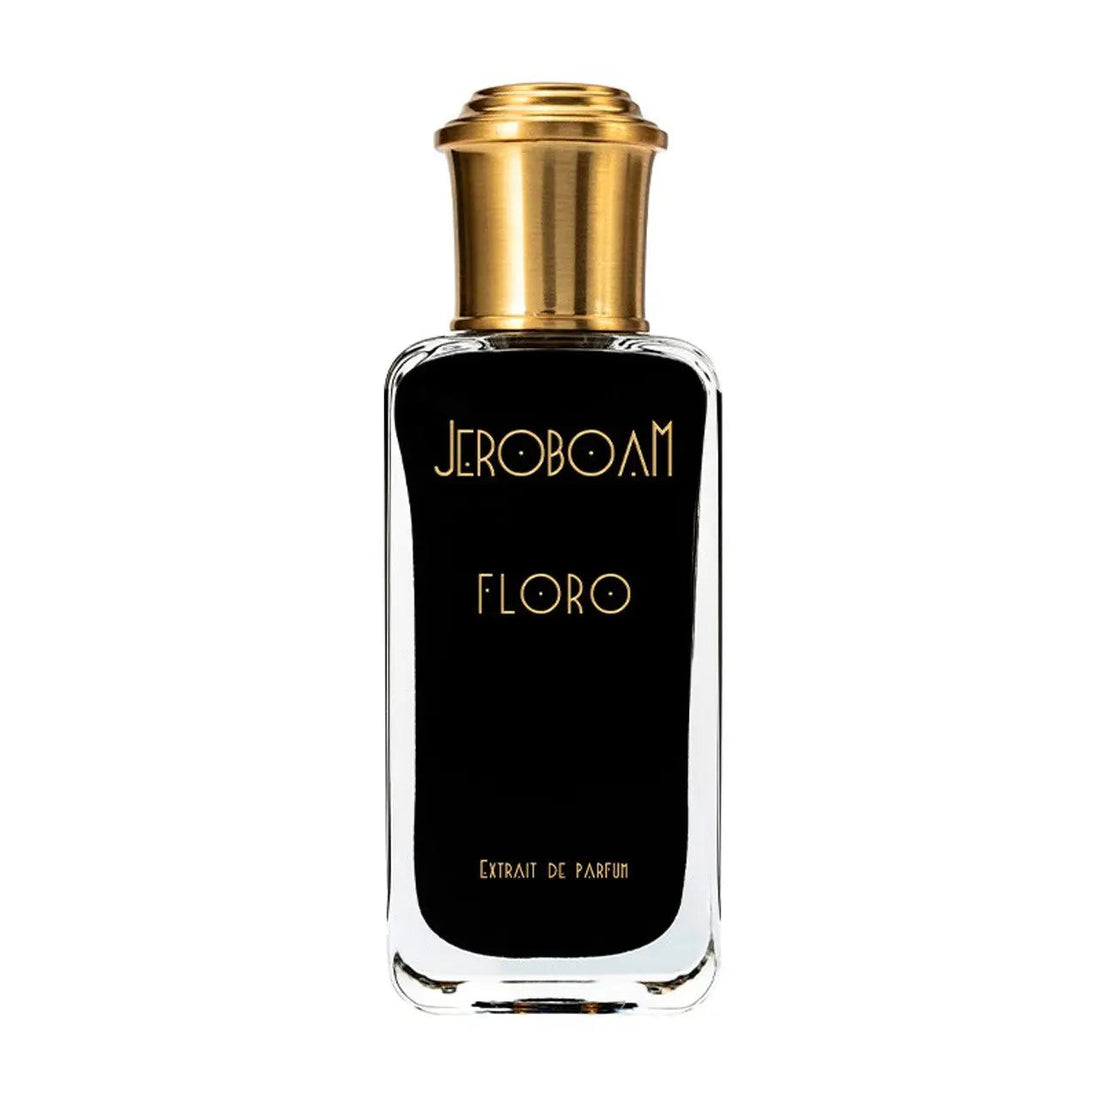 Jeroboam Floro Perfume Extract - 30 ml